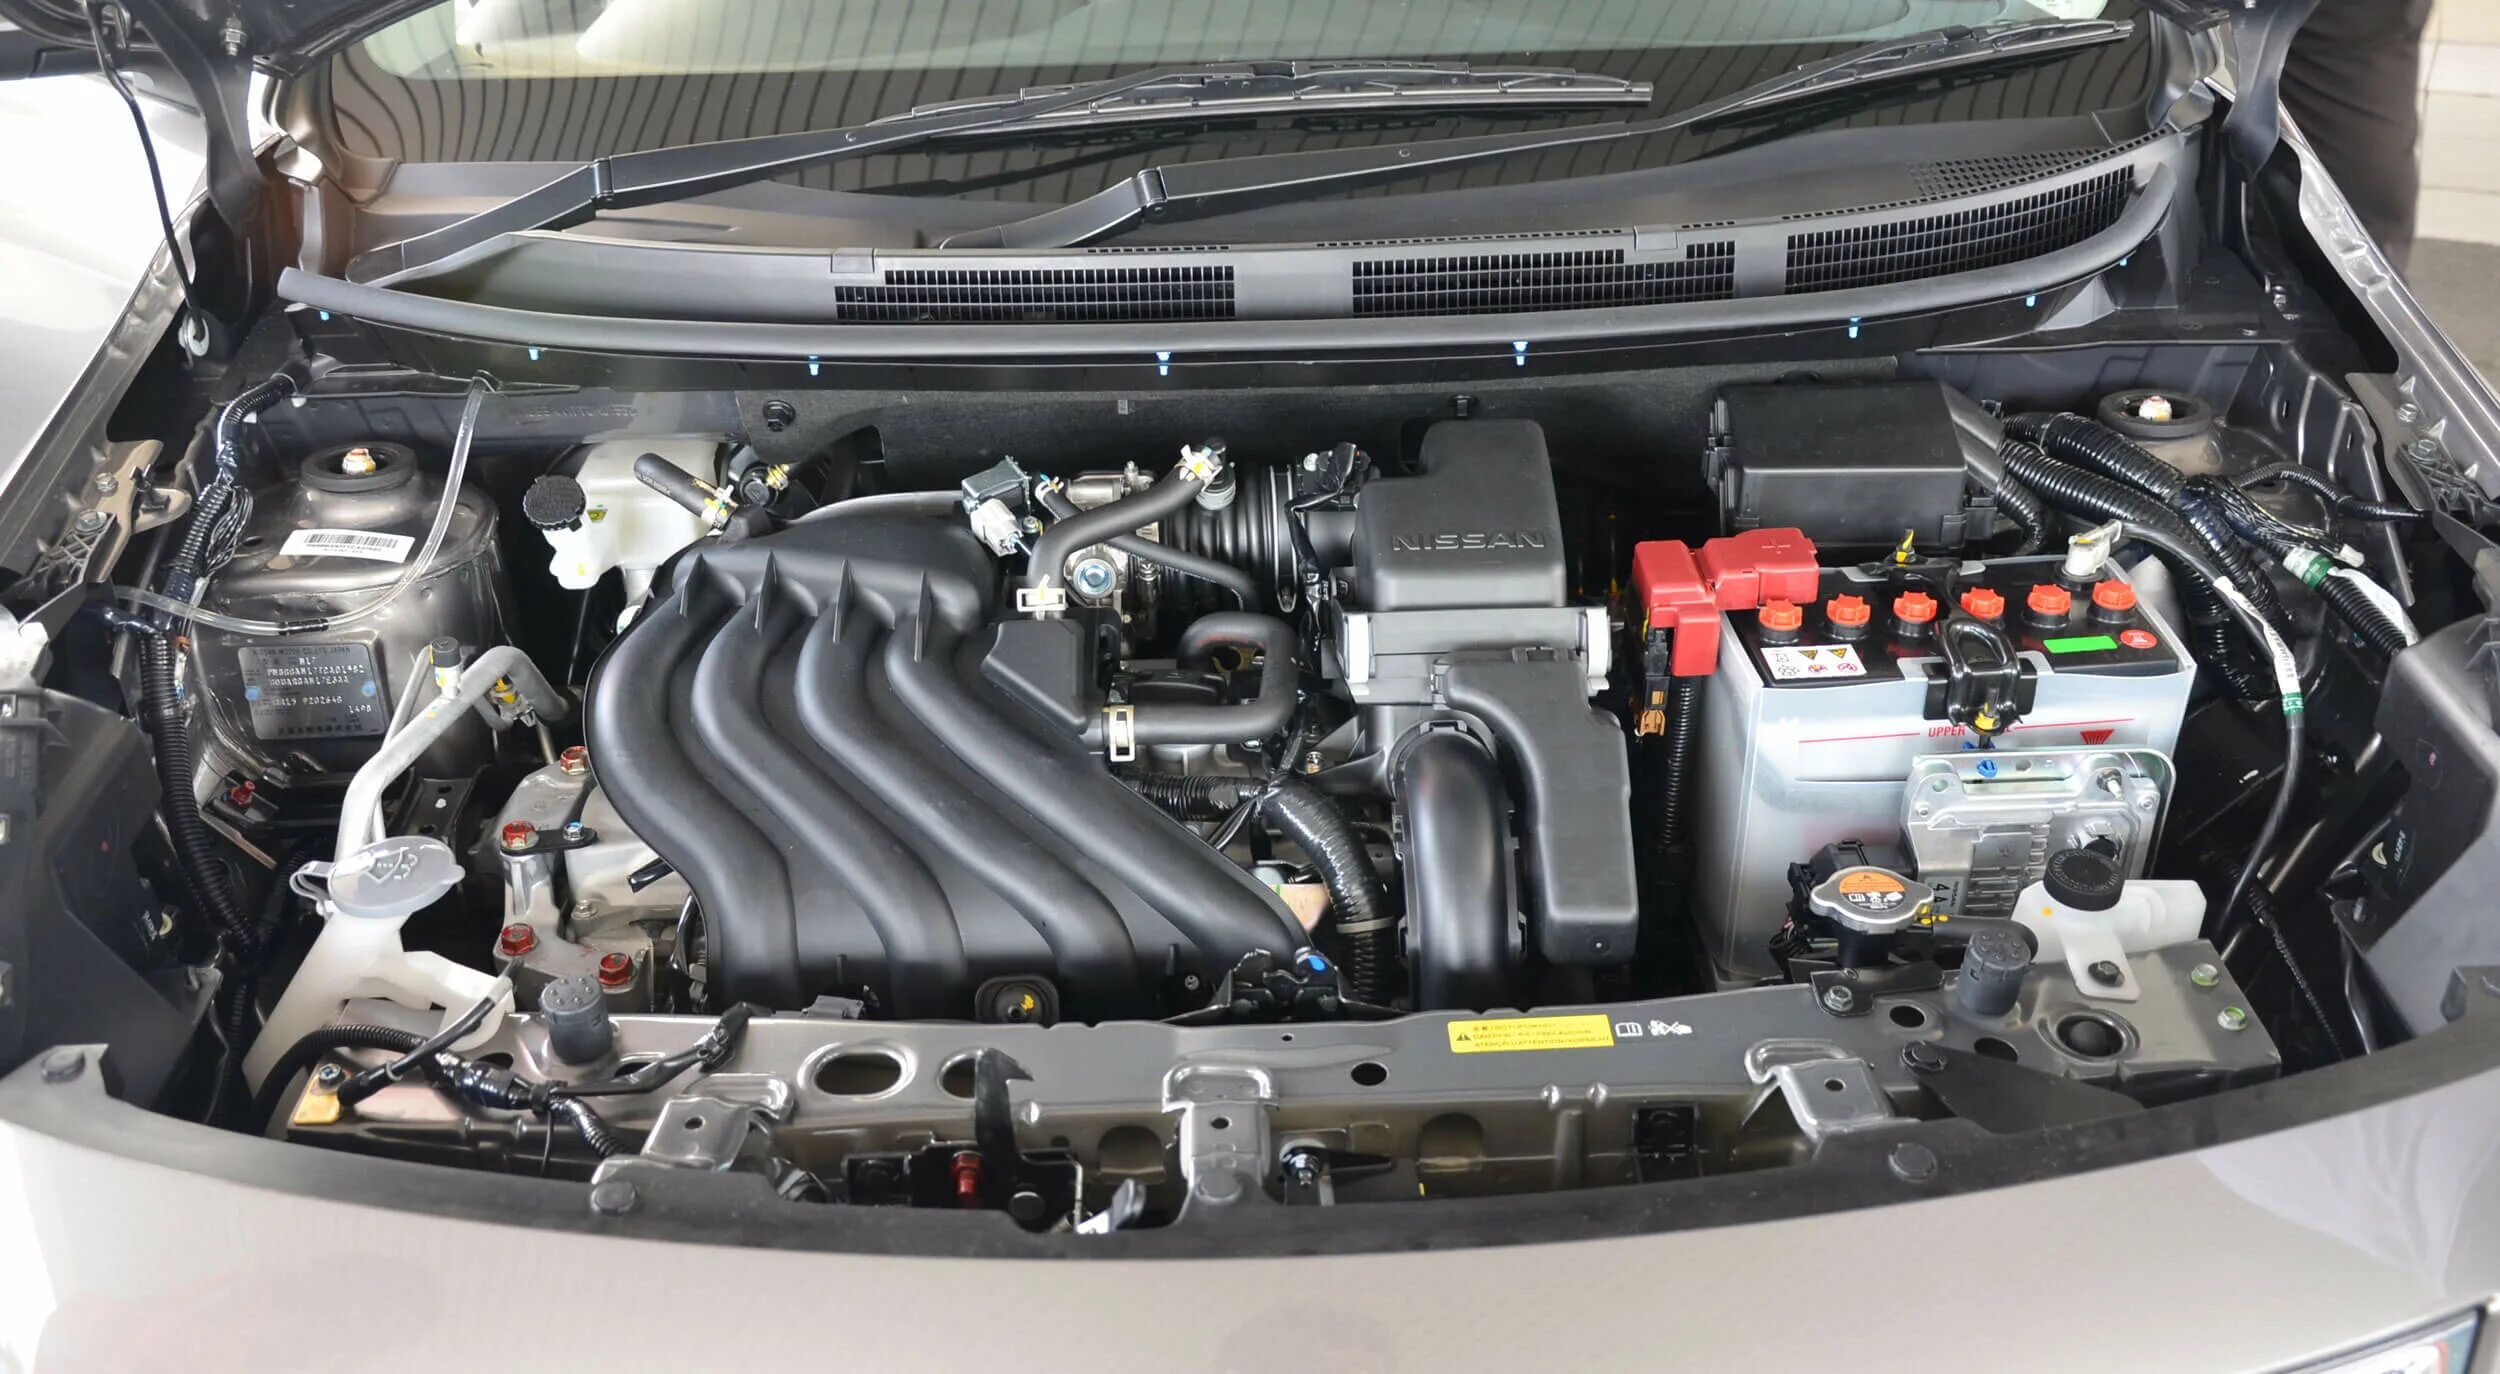 Nissan Almera 2014 под капотом. Ниссан Альмера g15 2014 двигатель. Ниссан Альмера 2014 двигатель 1.6. Моторный отсек Ниссан Альмера g15.